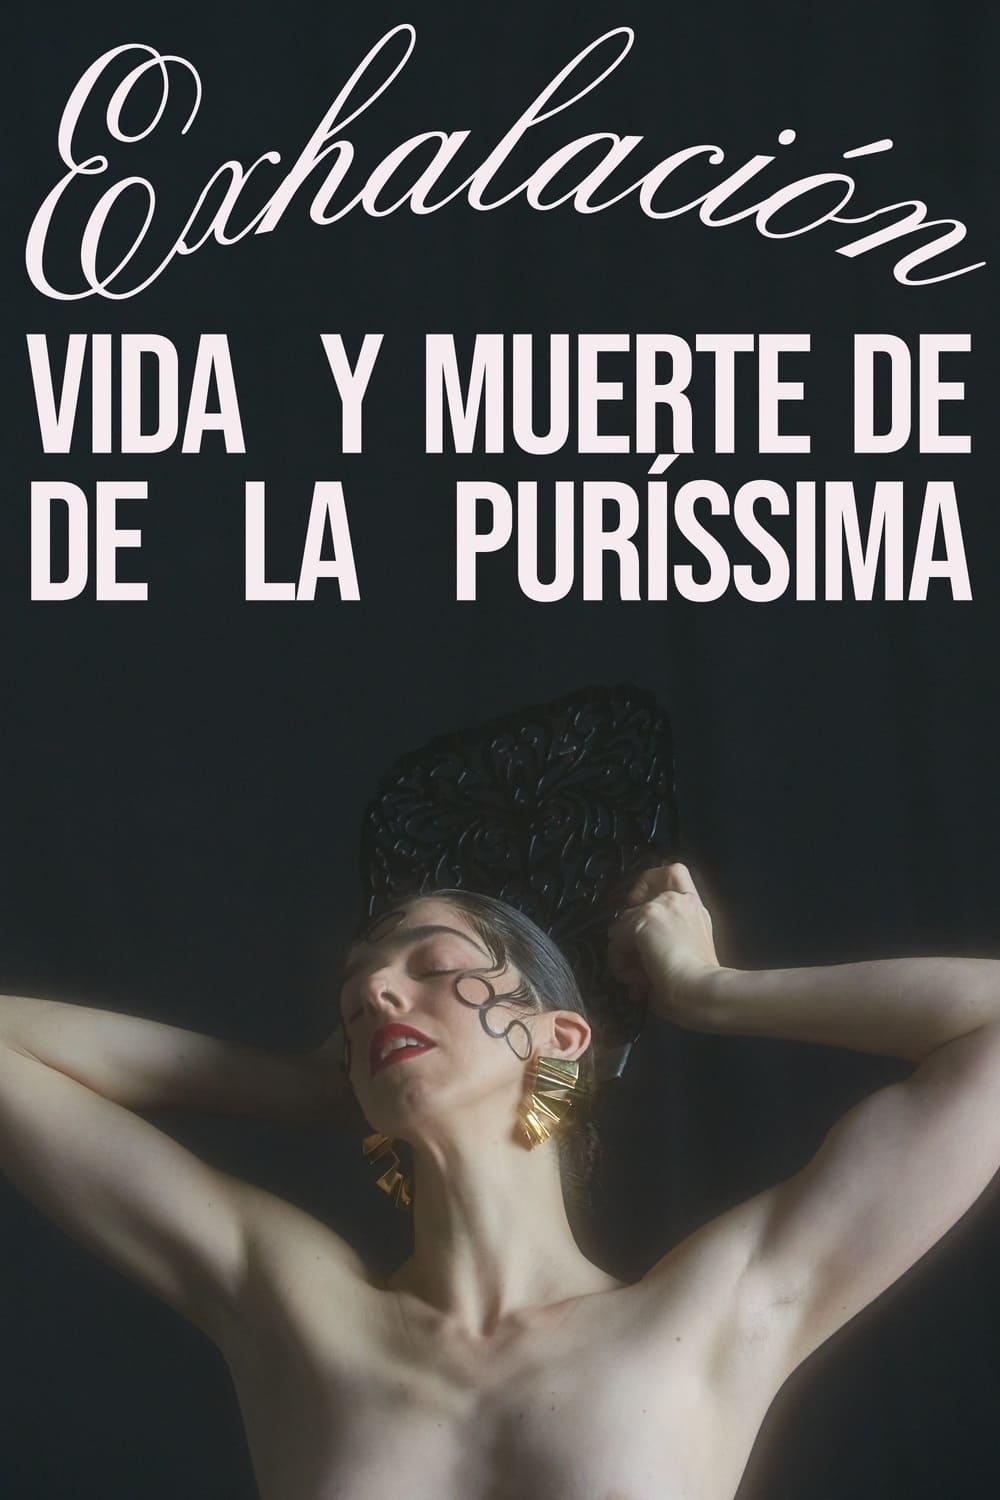 Exhalación: vida y muerte de De La Puríssima poster